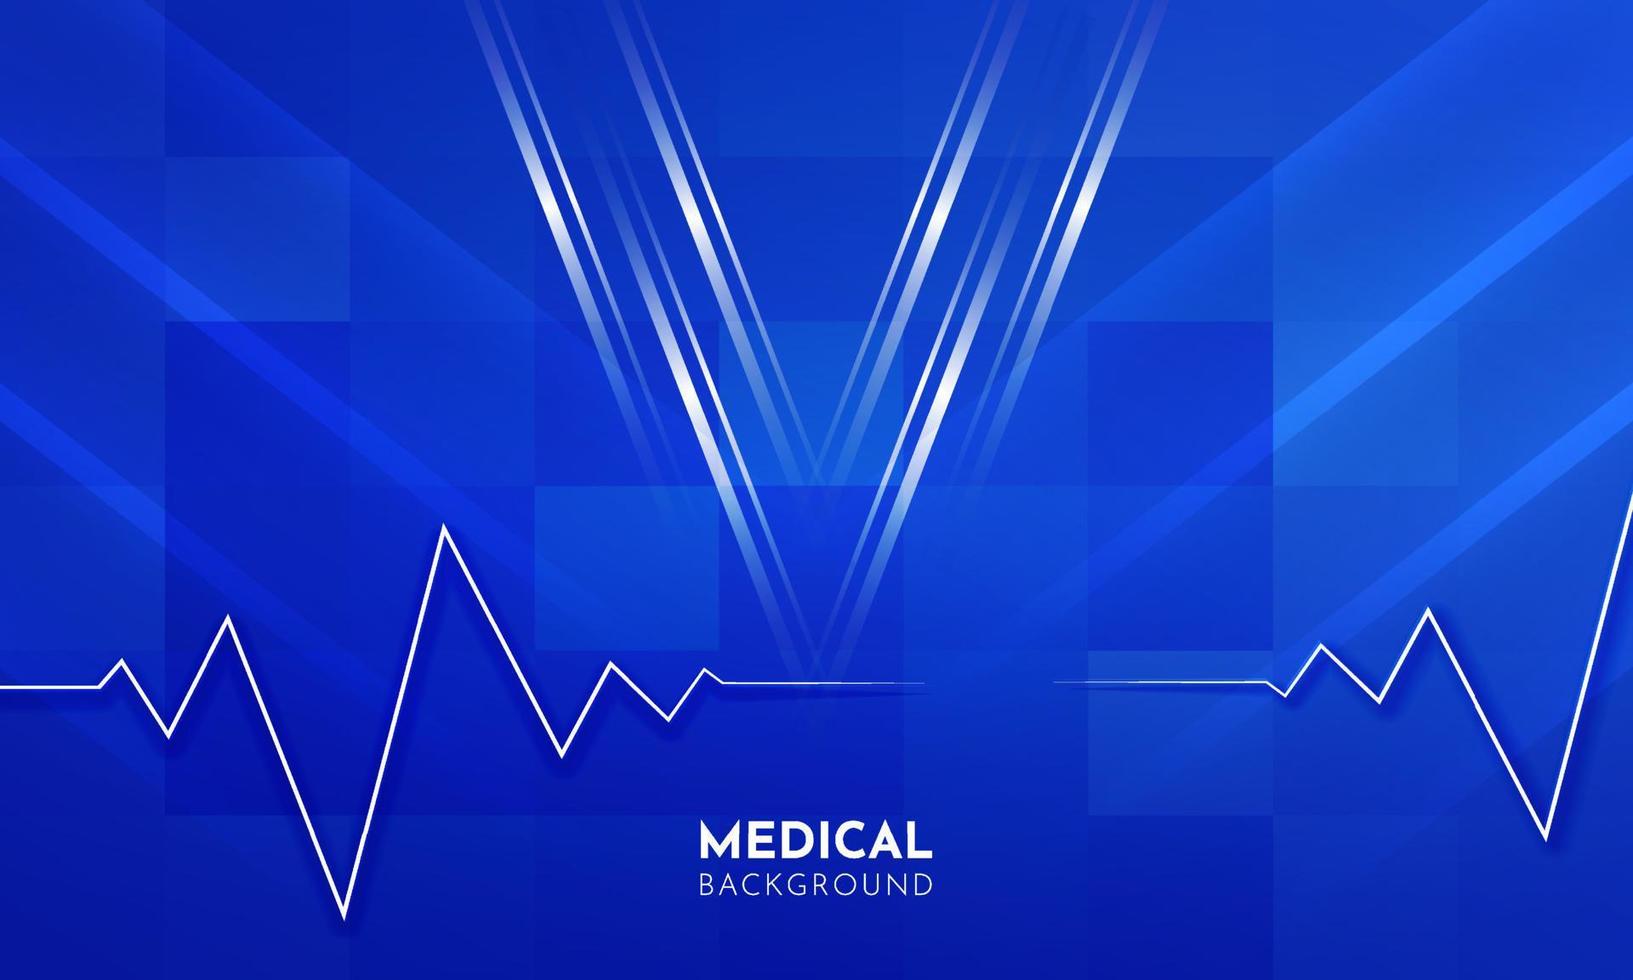 Modern medical design background vector. Trendy medical background template vector